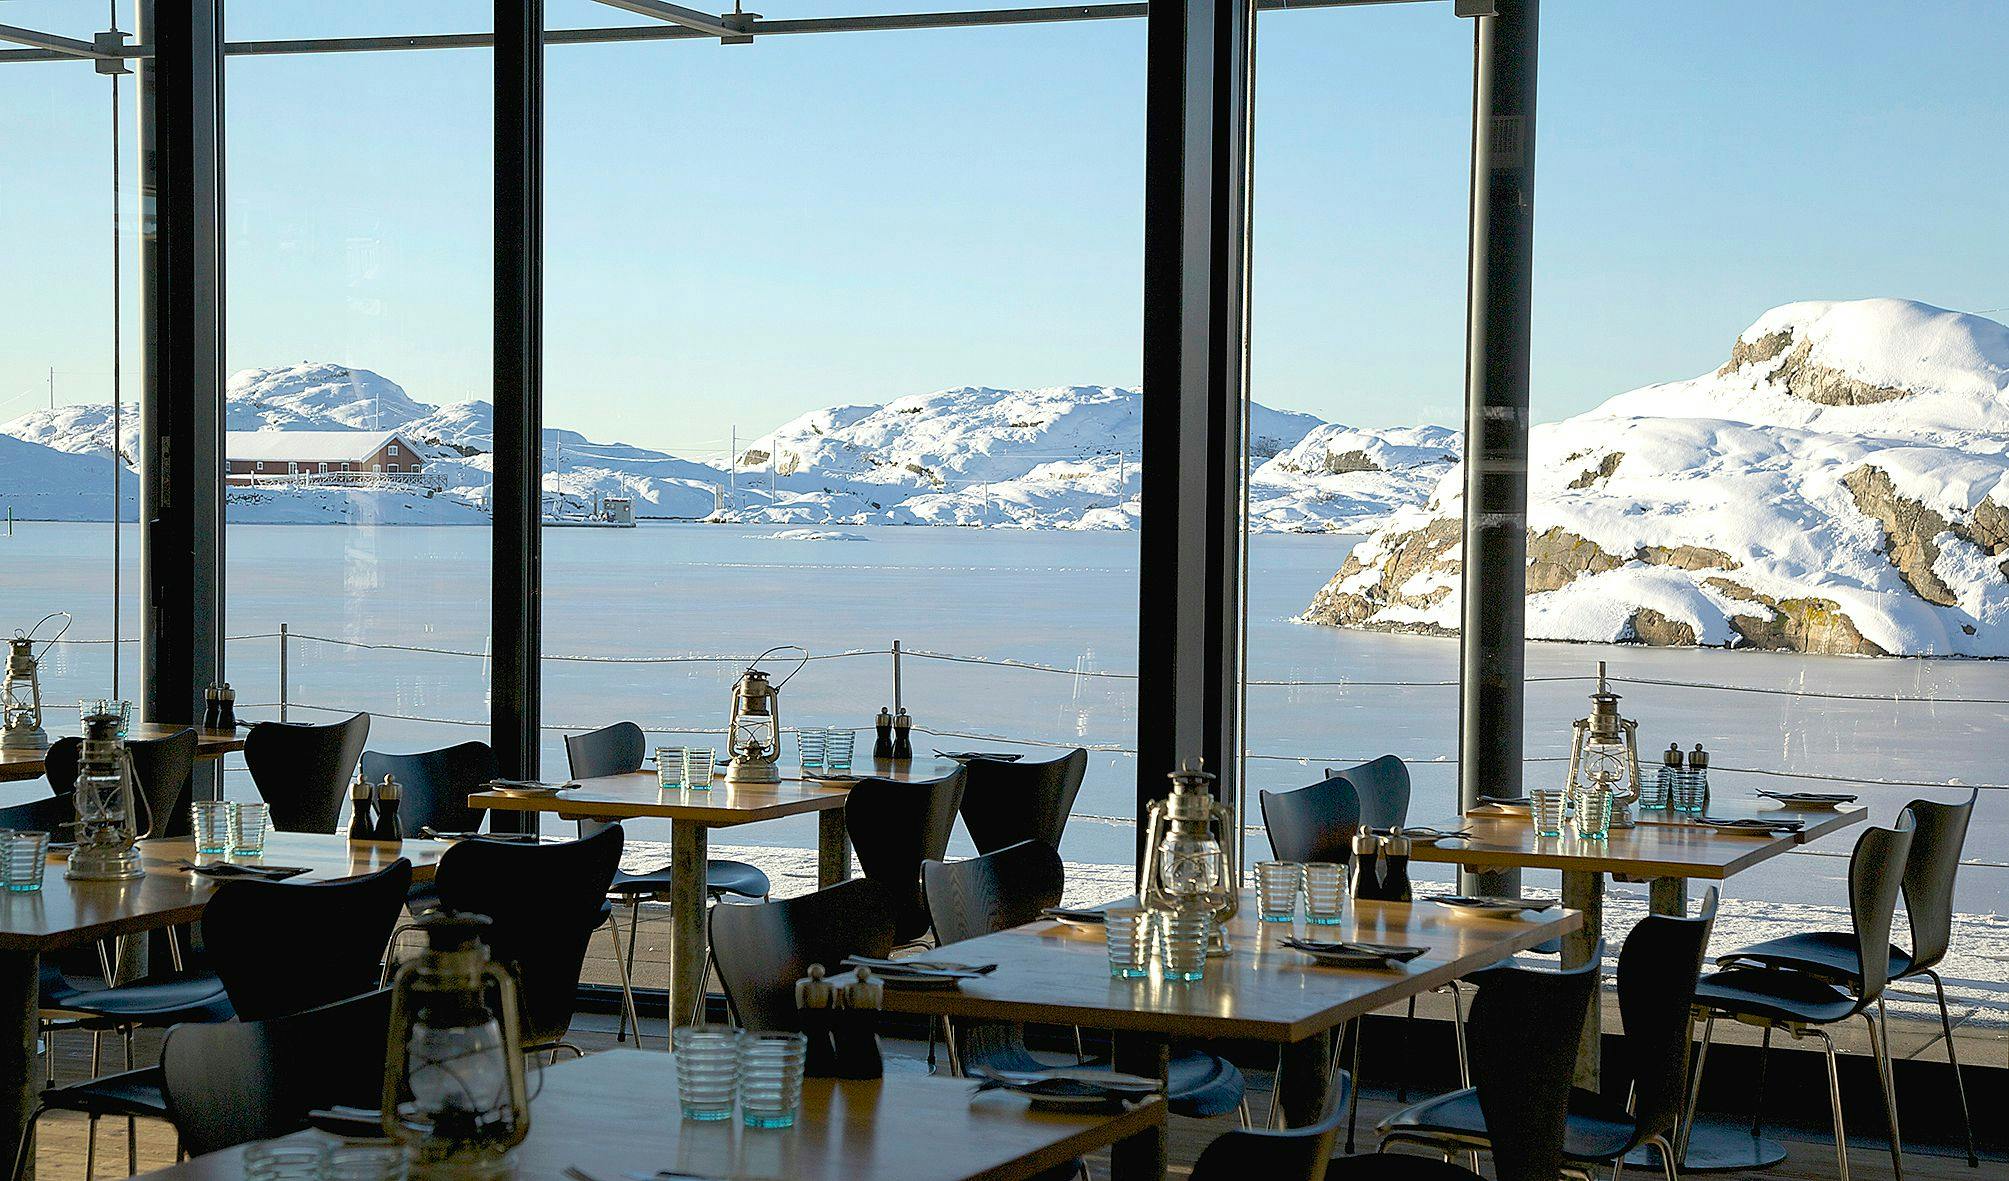 Utsikt från restaurang Vatten över snötäckta klippor och is på havet